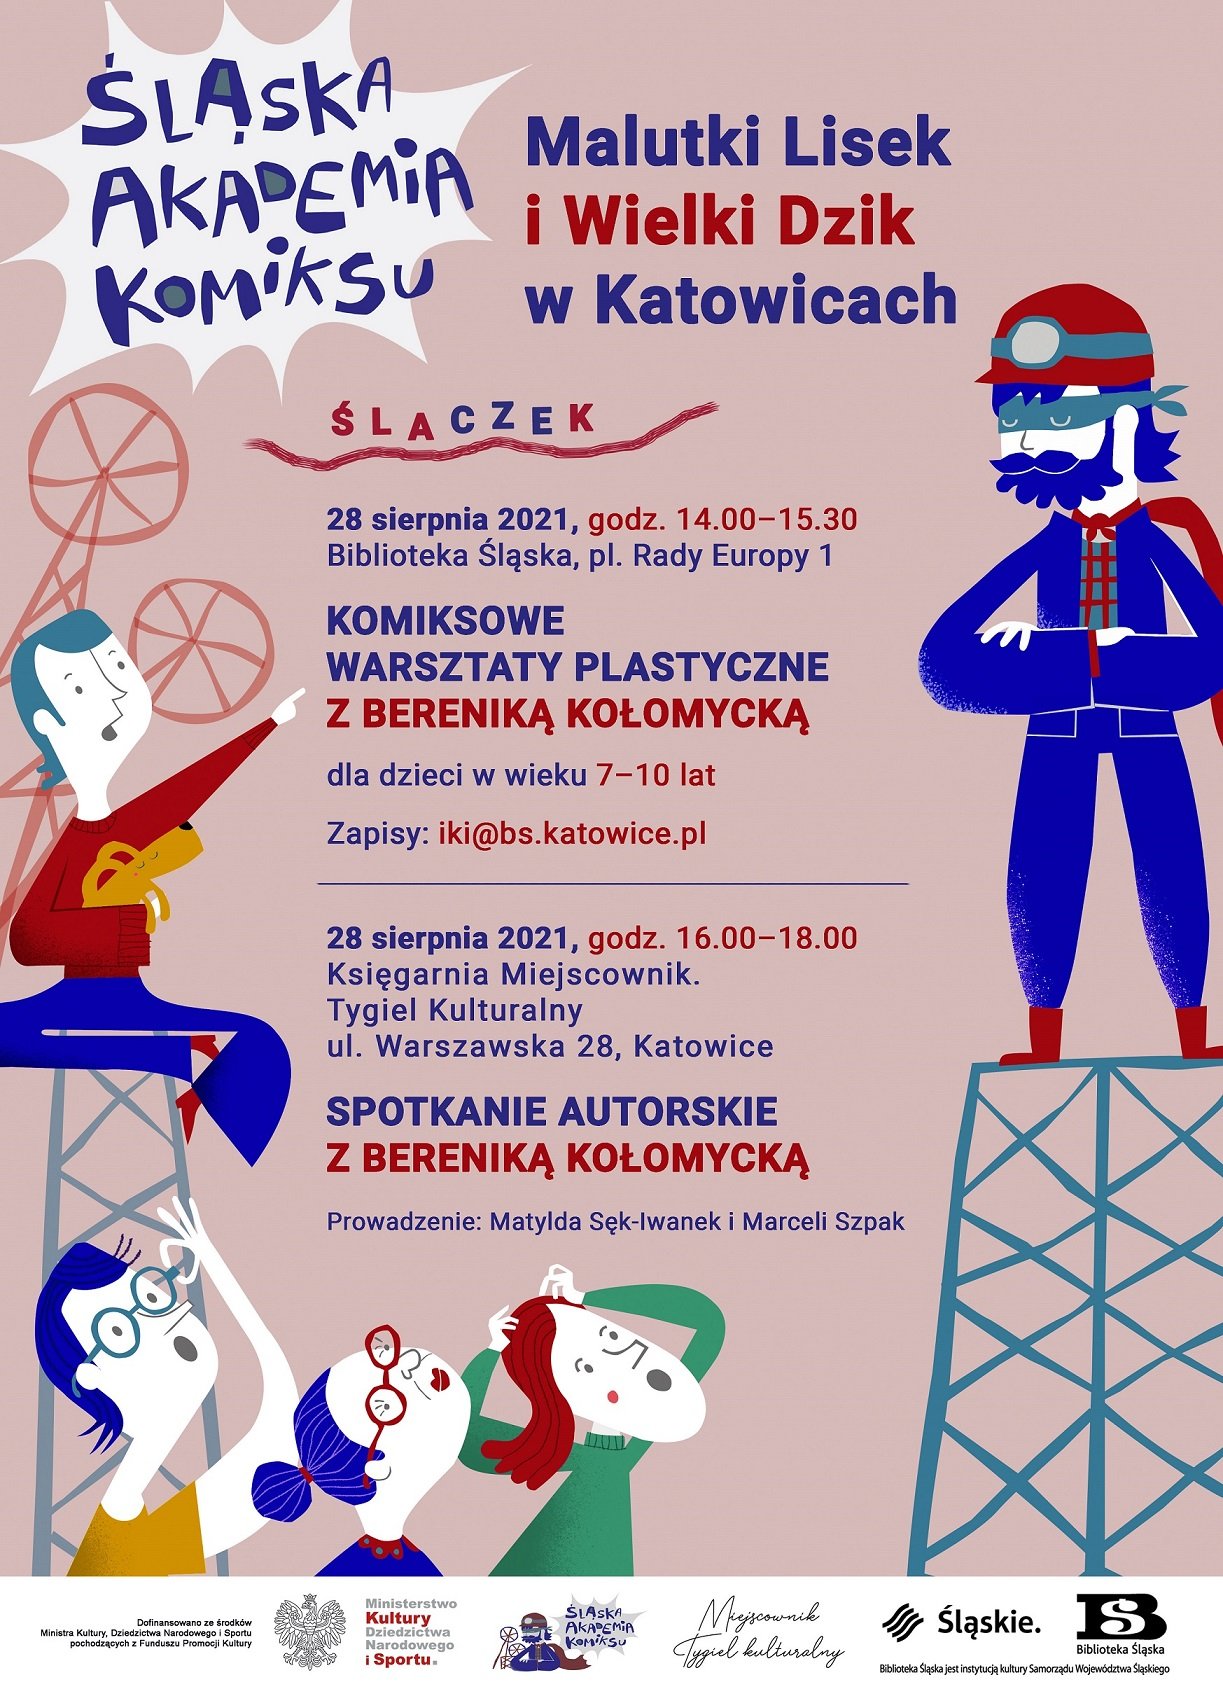 Malutki Lisek i Wielki Dzik w Katowicach. ŚLAczeK – warsztaty komiksowe dla dzieci i spotkanie autorskie